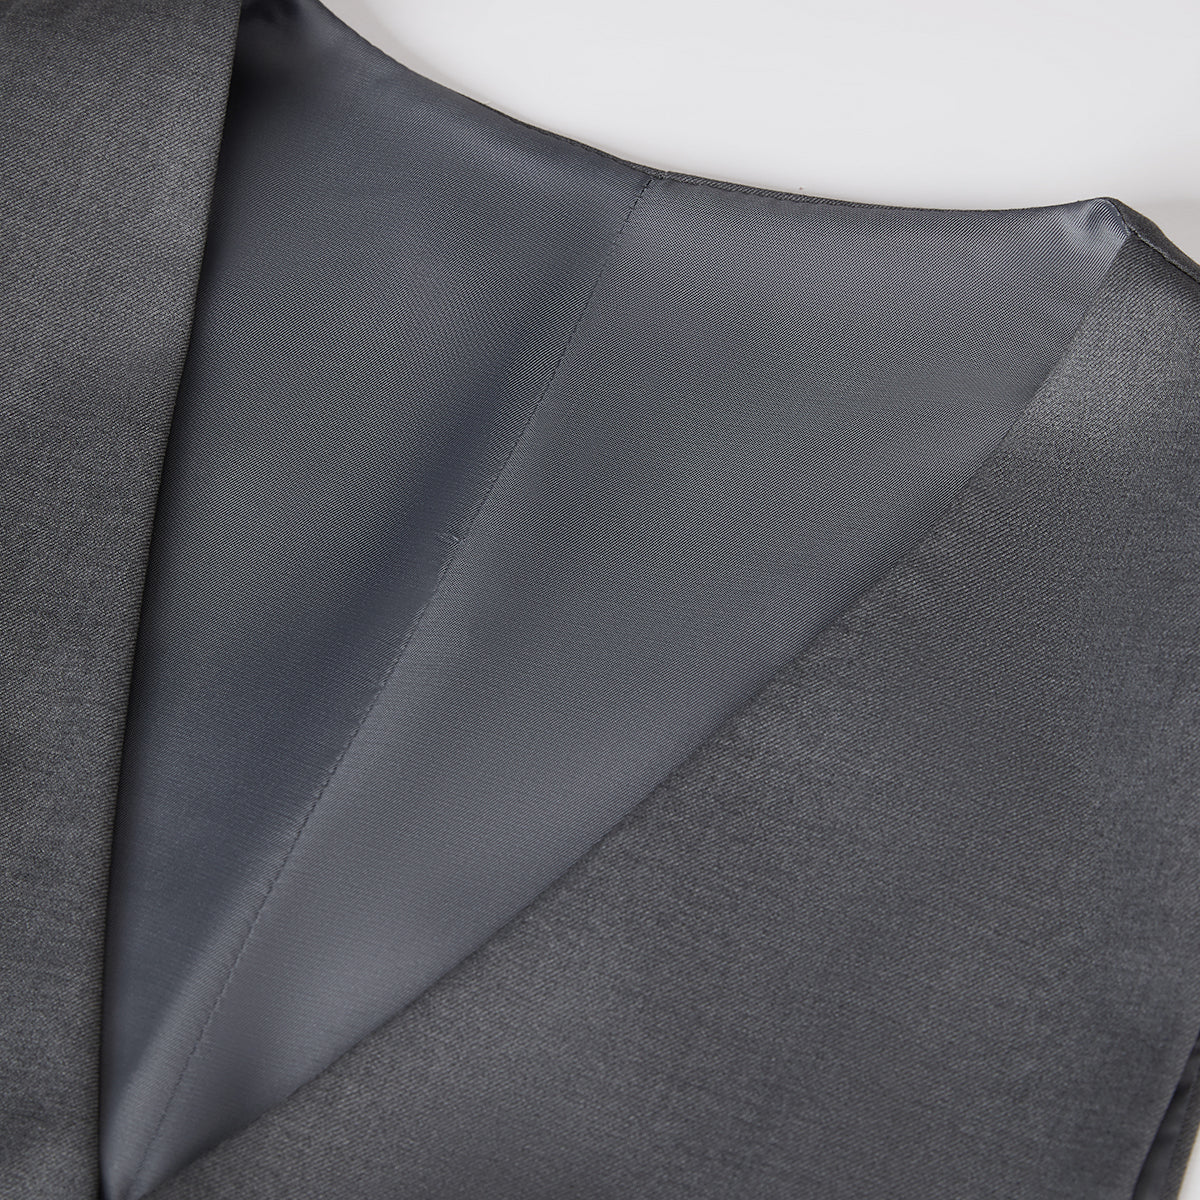 3-Piece One Button Suit Slim Fit Grey Suit